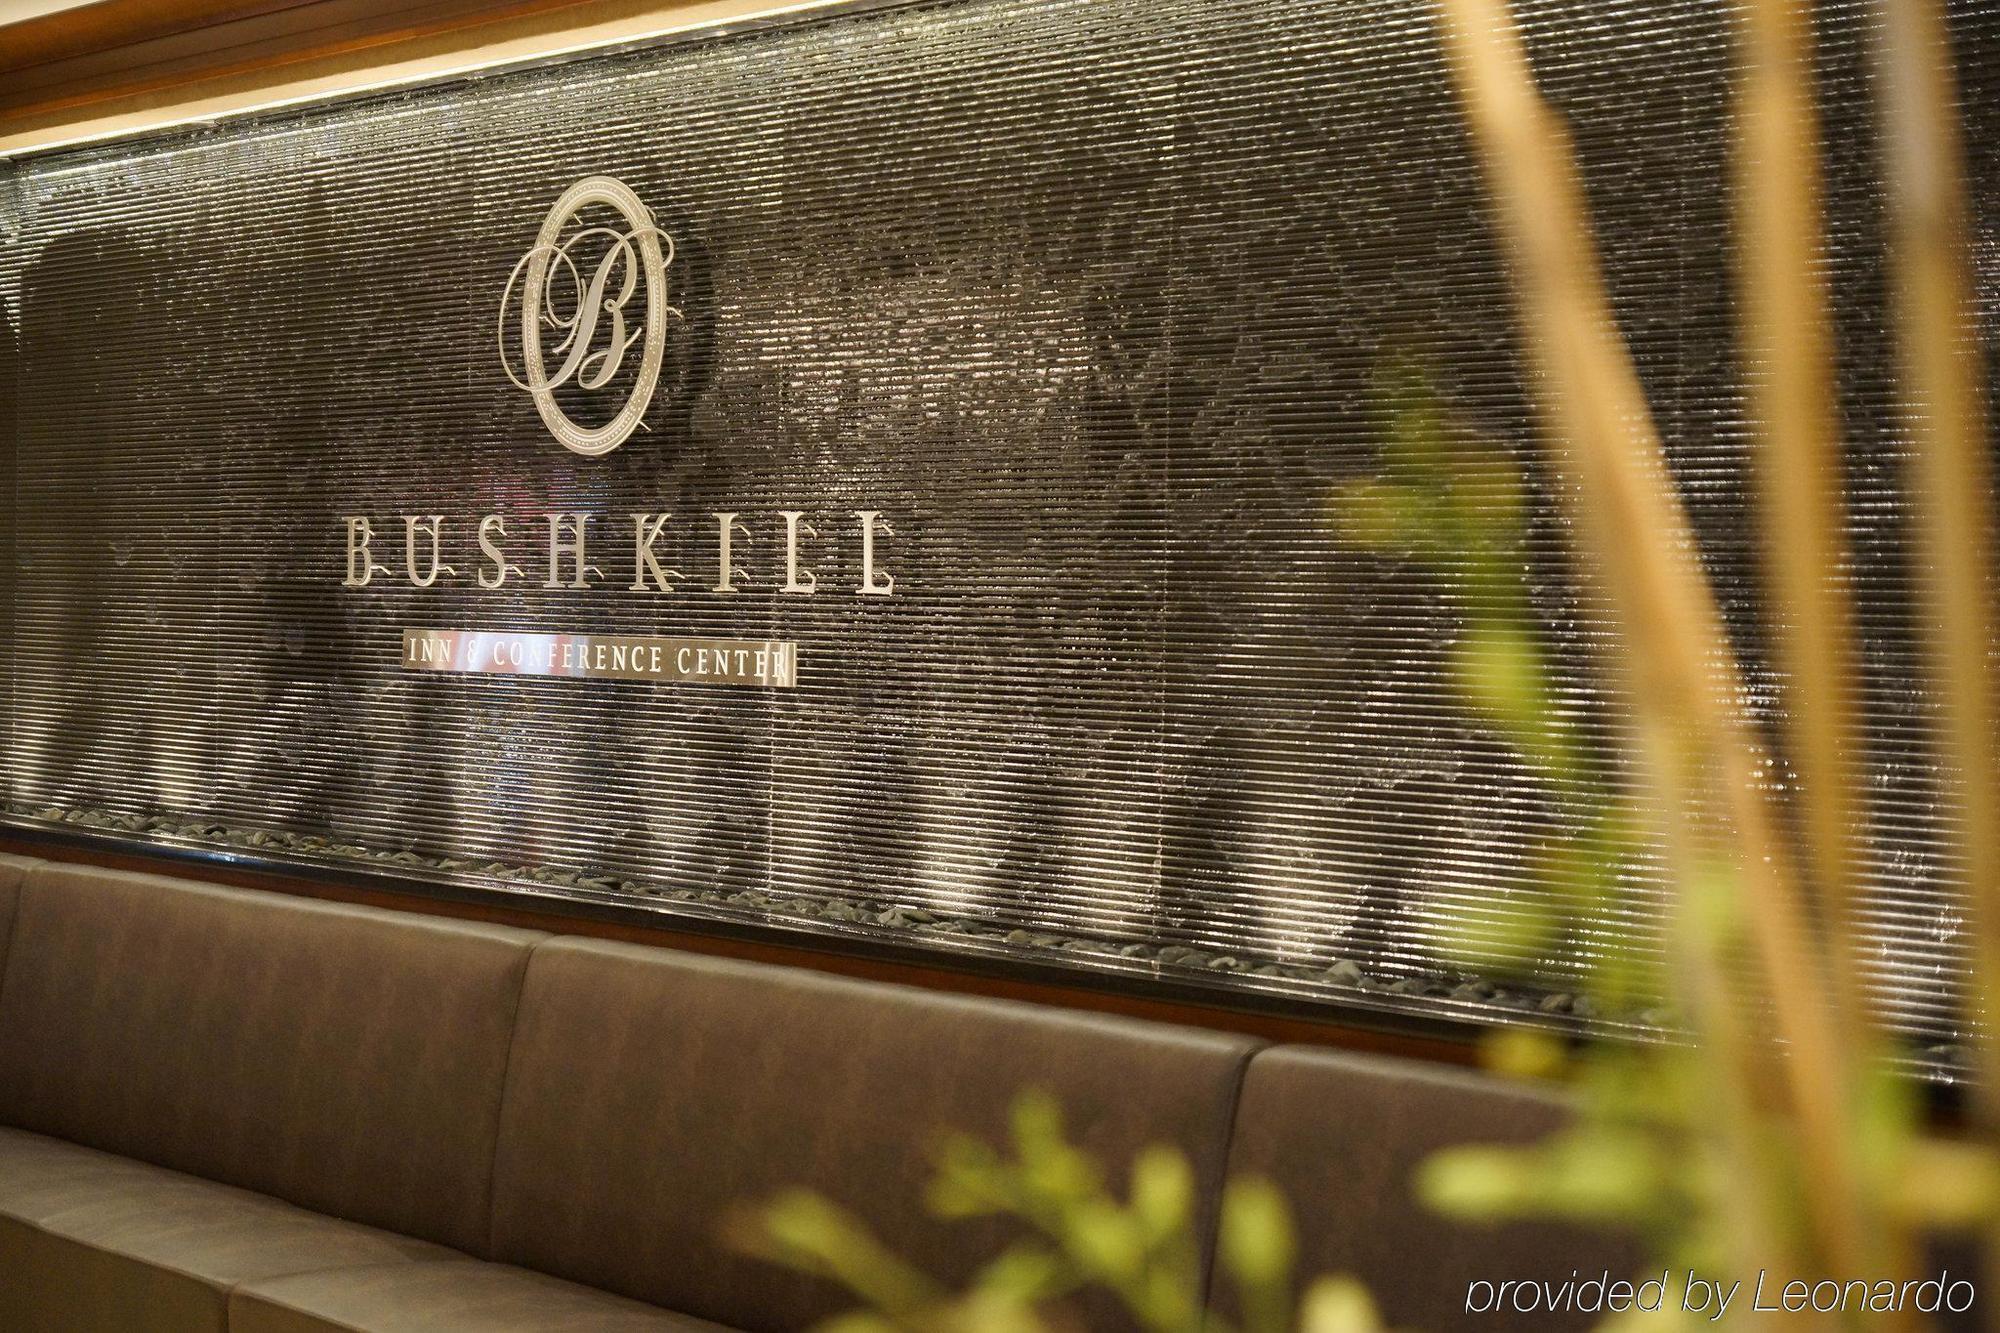 Bushkill Inn & Conference Center Luaran gambar